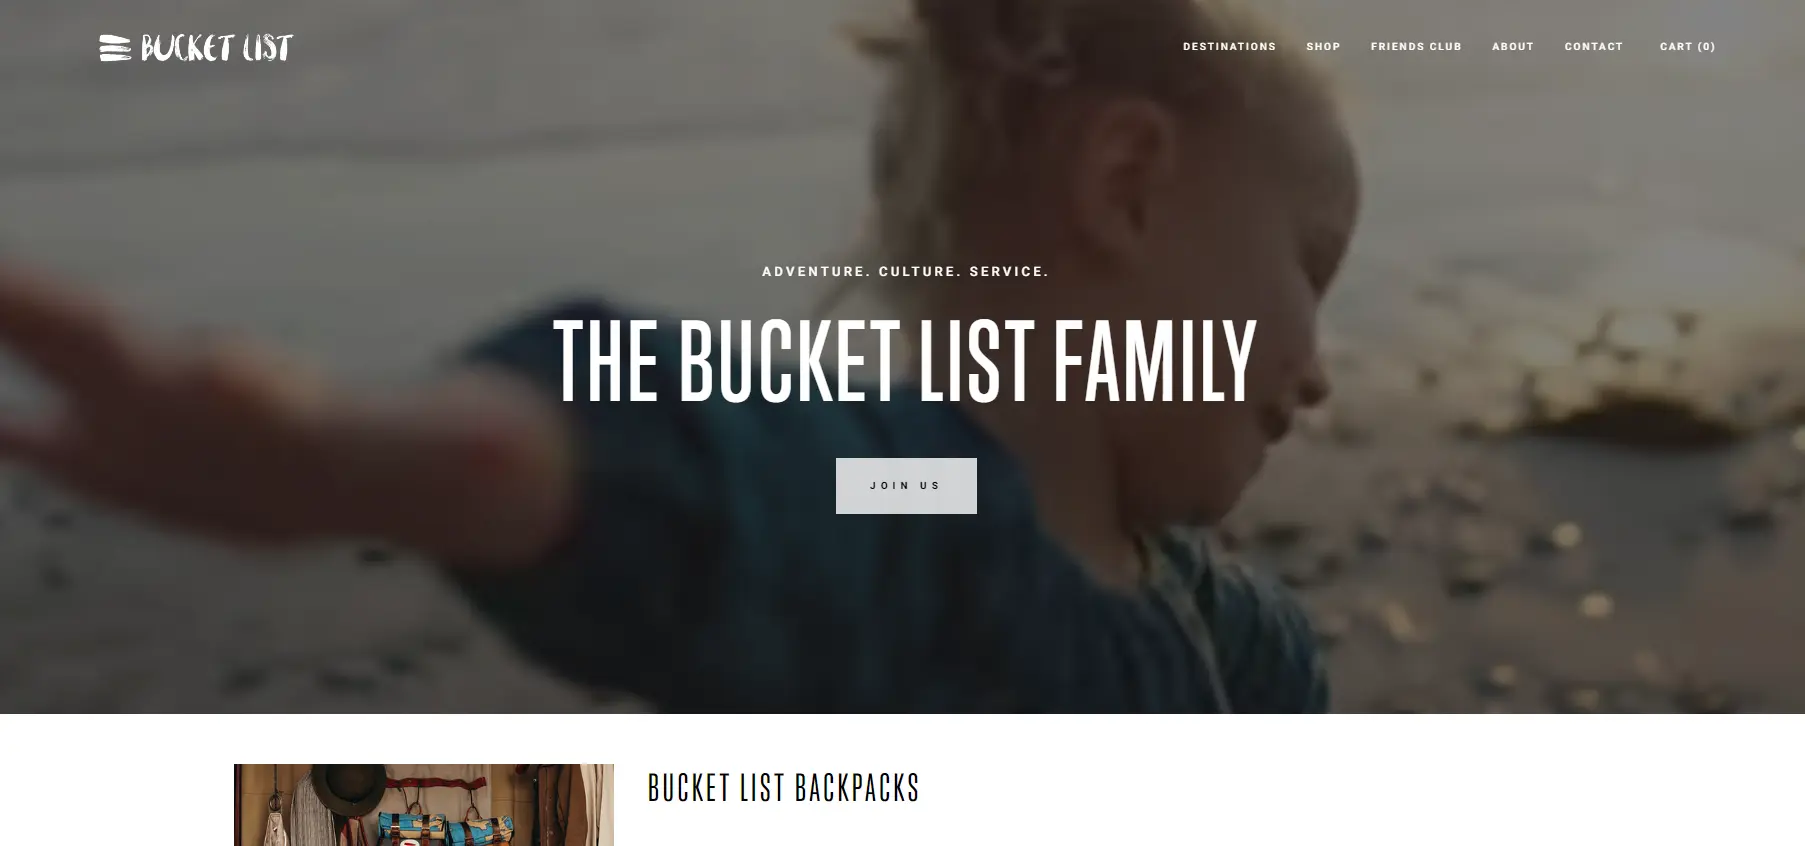 The Bucket List Family